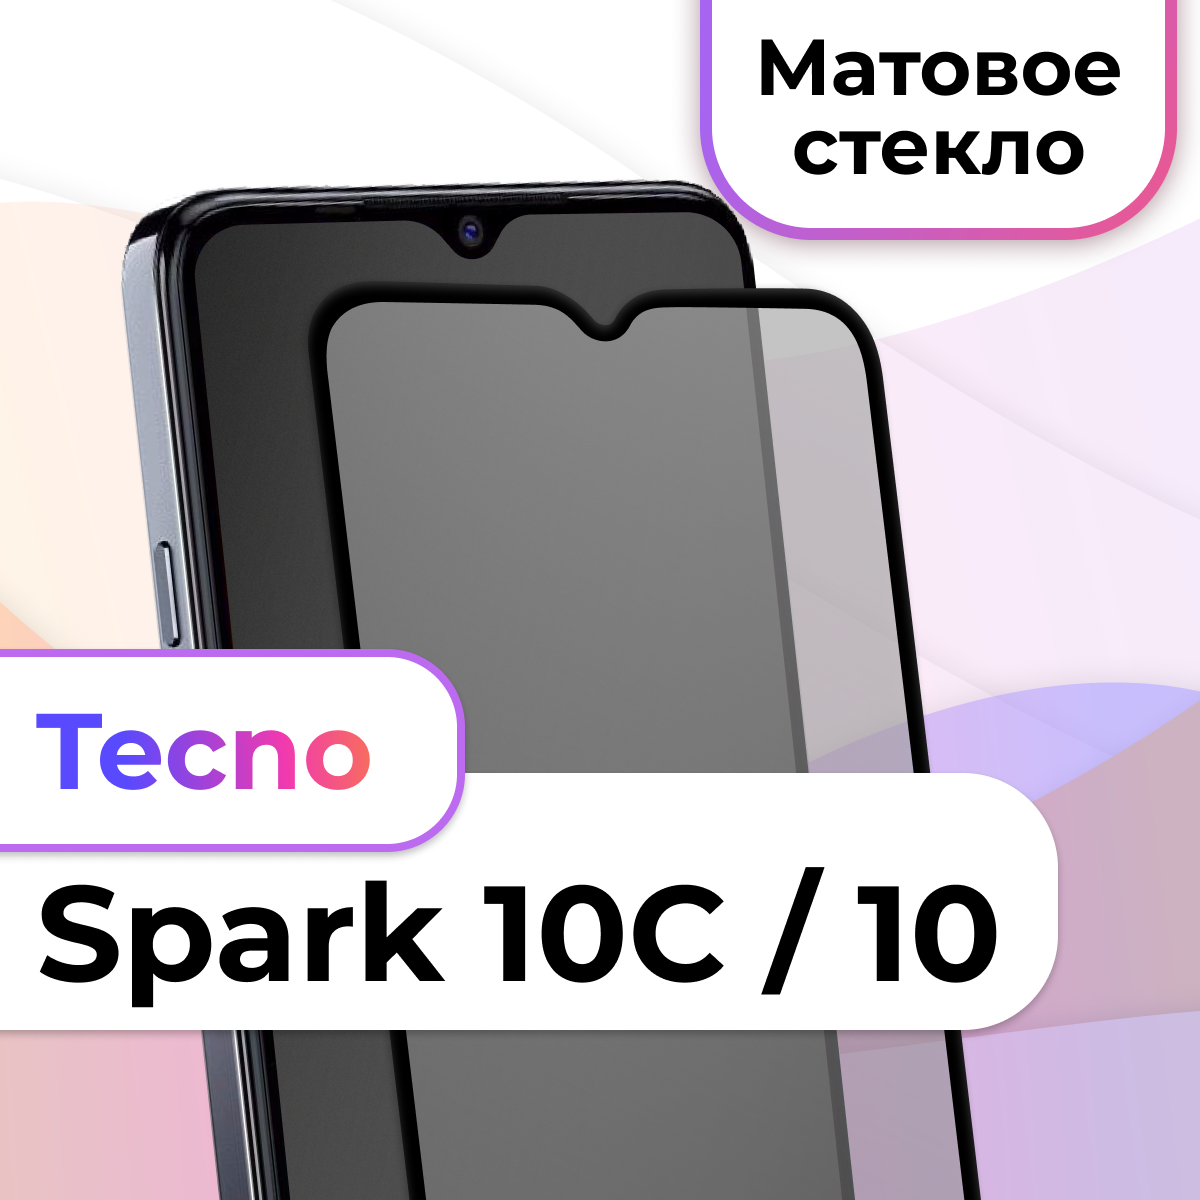 Защитное стекло на телефон Tecno Spark 10 Spark 10C / Матовое противоударное стекло на весь экран для смартфона Техно Спарк 10 Спарк 10С / Черный